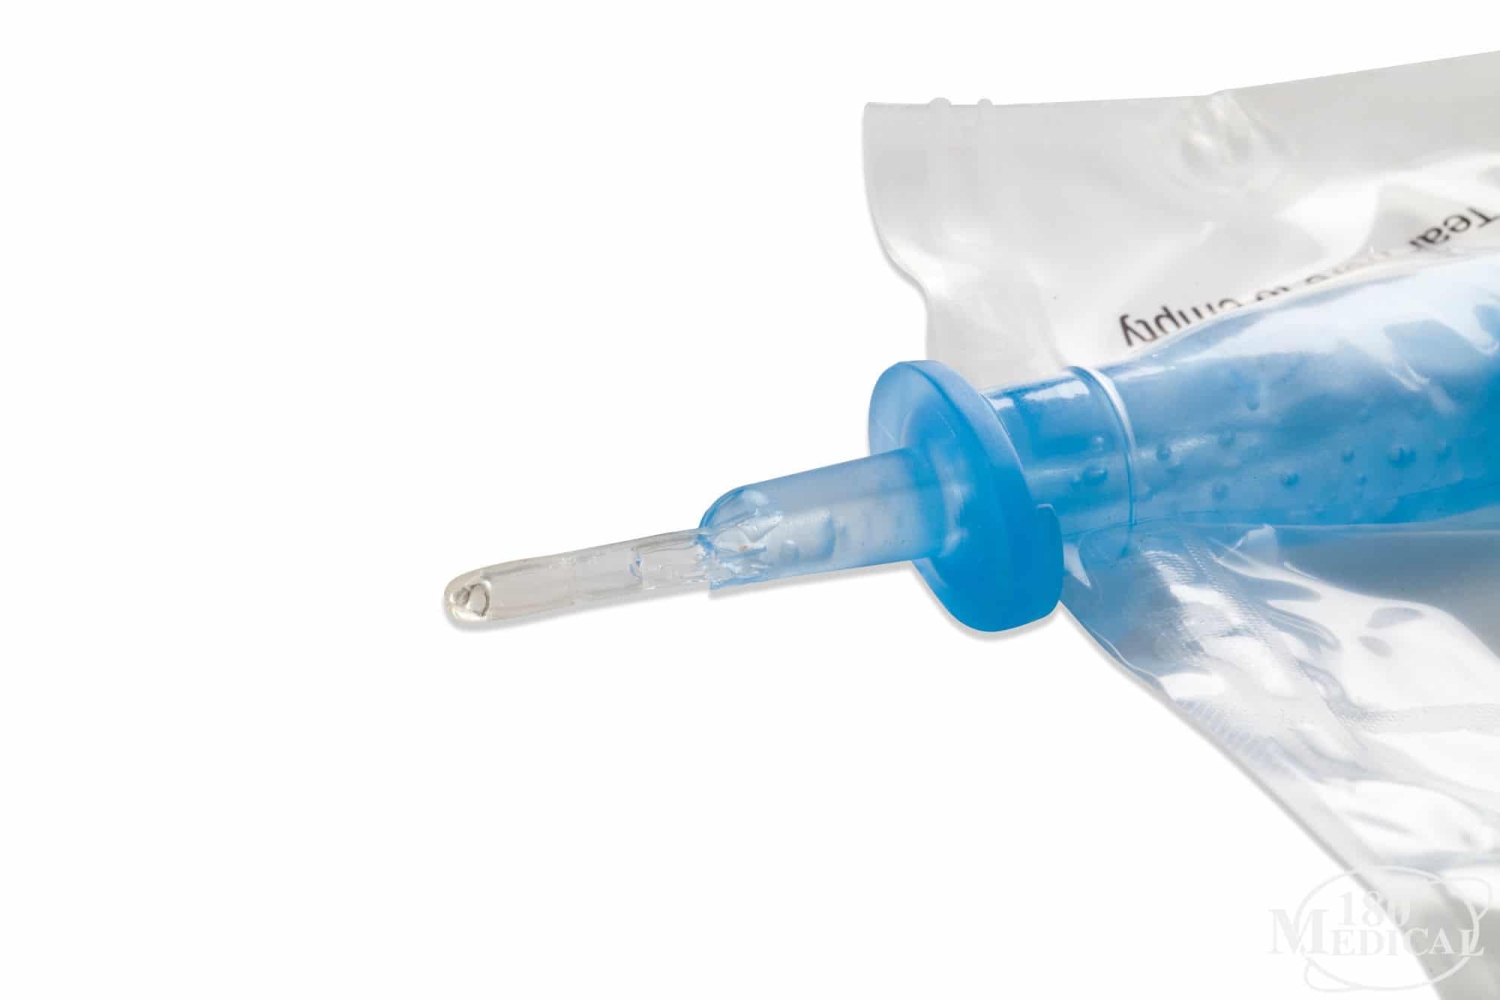 Hollister-Advance-Plus-Catheter-Kit-Insertion-Tip